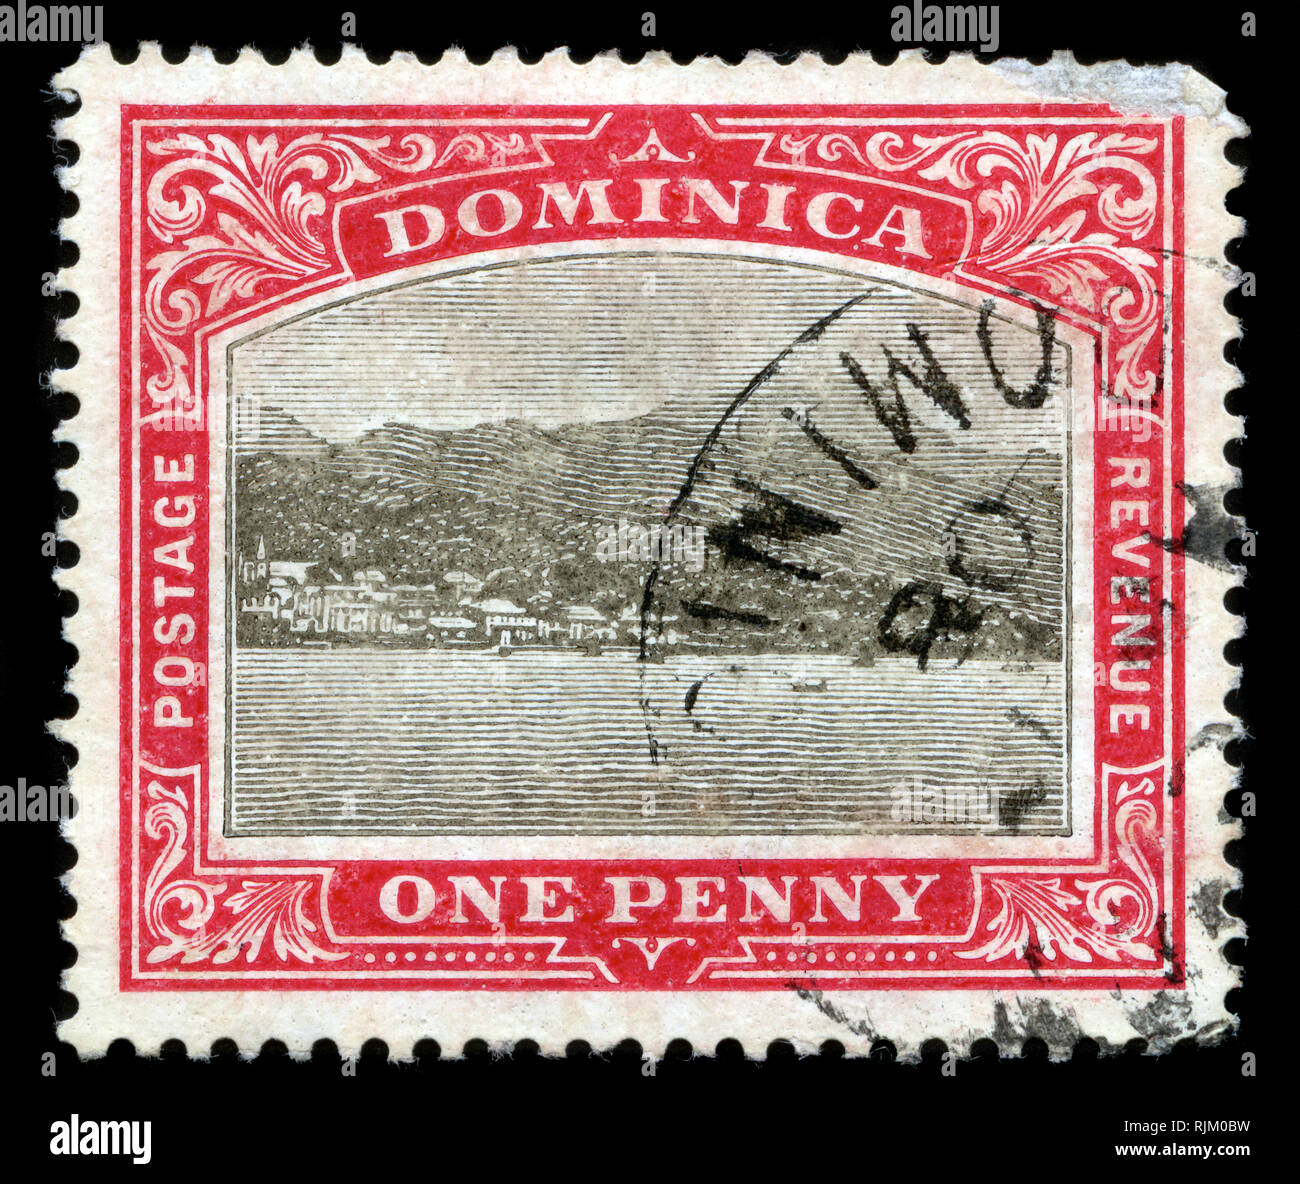 Francobollo da Dominica nella guarnizione della colonia serie emesse nel 1907 Foto Stock